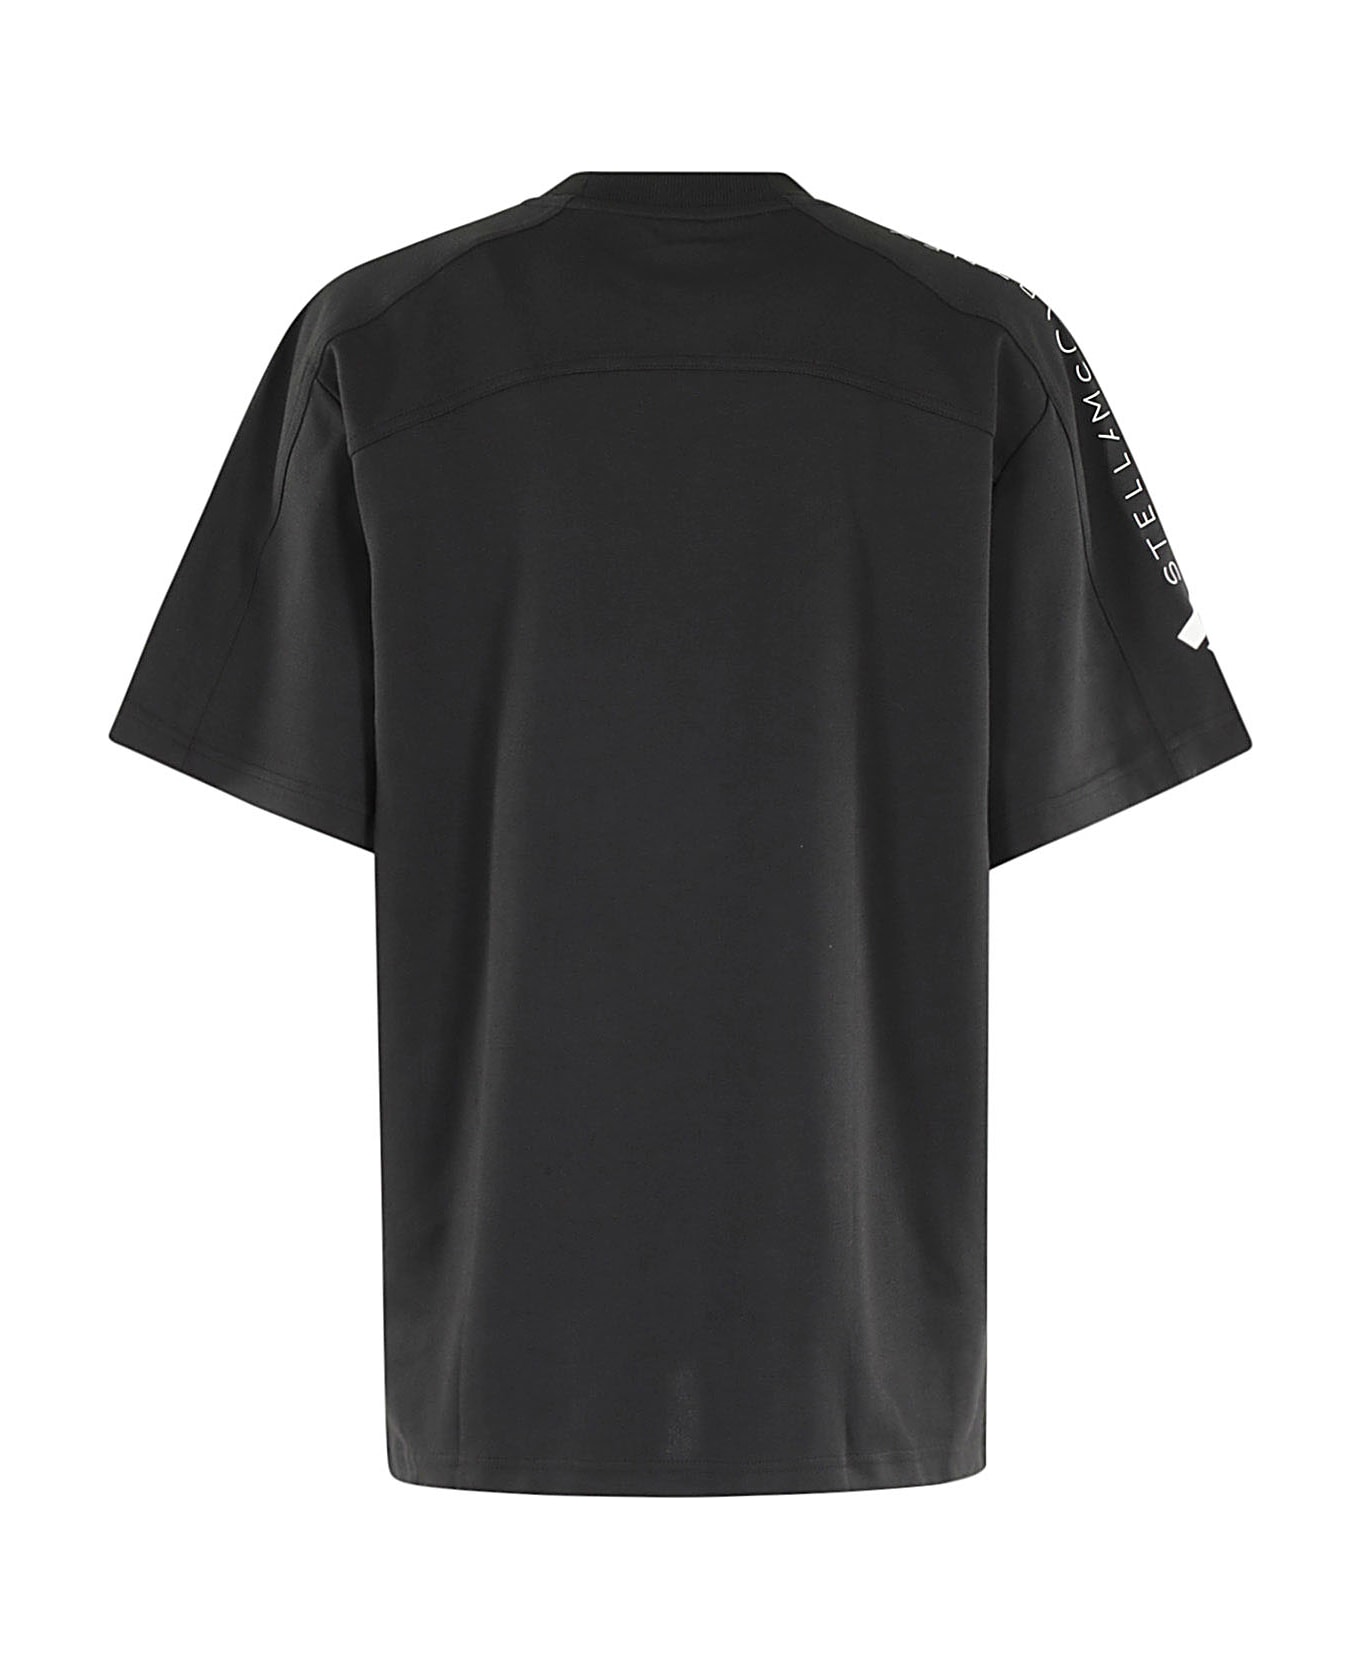 Adidas by Stella McCartney Logo Tee - Black Tシャツ